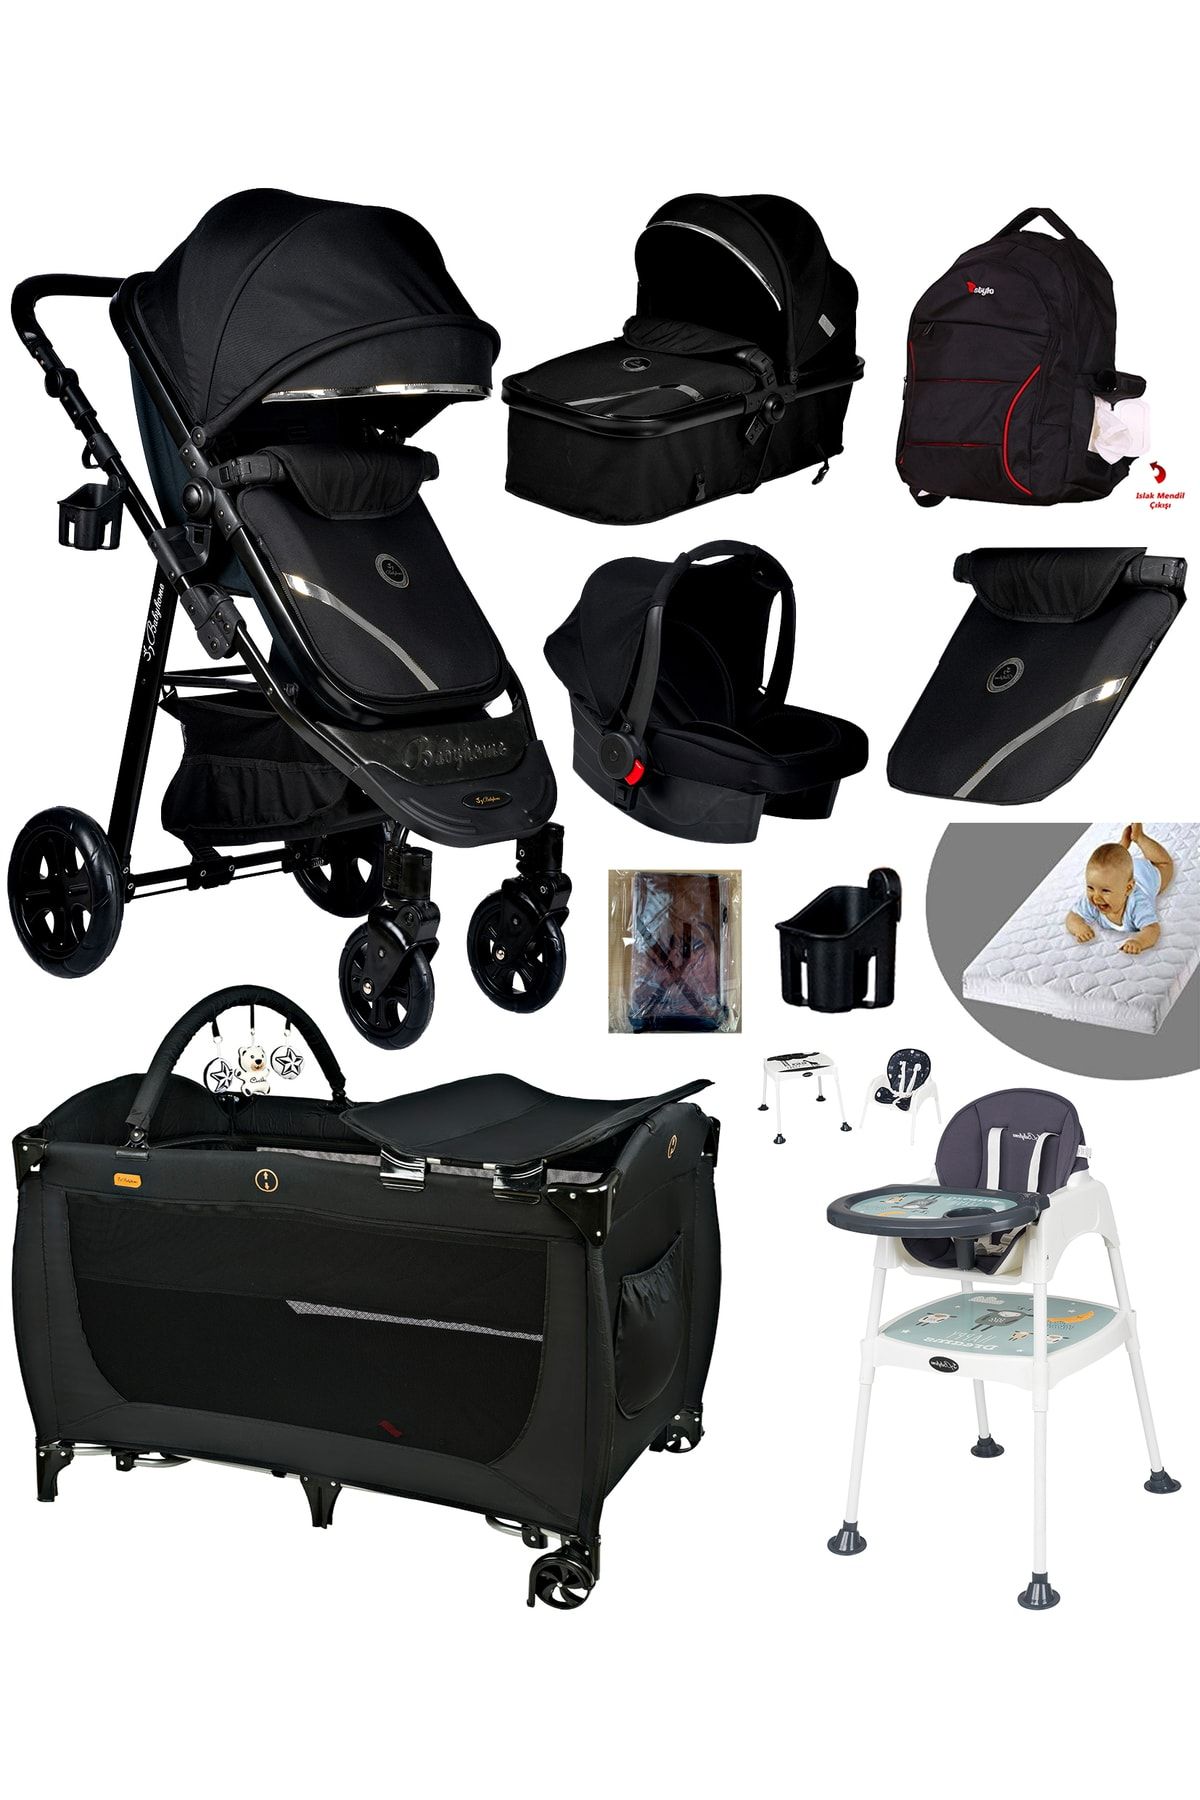 Baby Home Ekonomi Paket 10 In 1 940 Travel Sistem Bebek Arabası 560 Oyun Parkı Yatak Beşik Ve Mama Sandalyesi